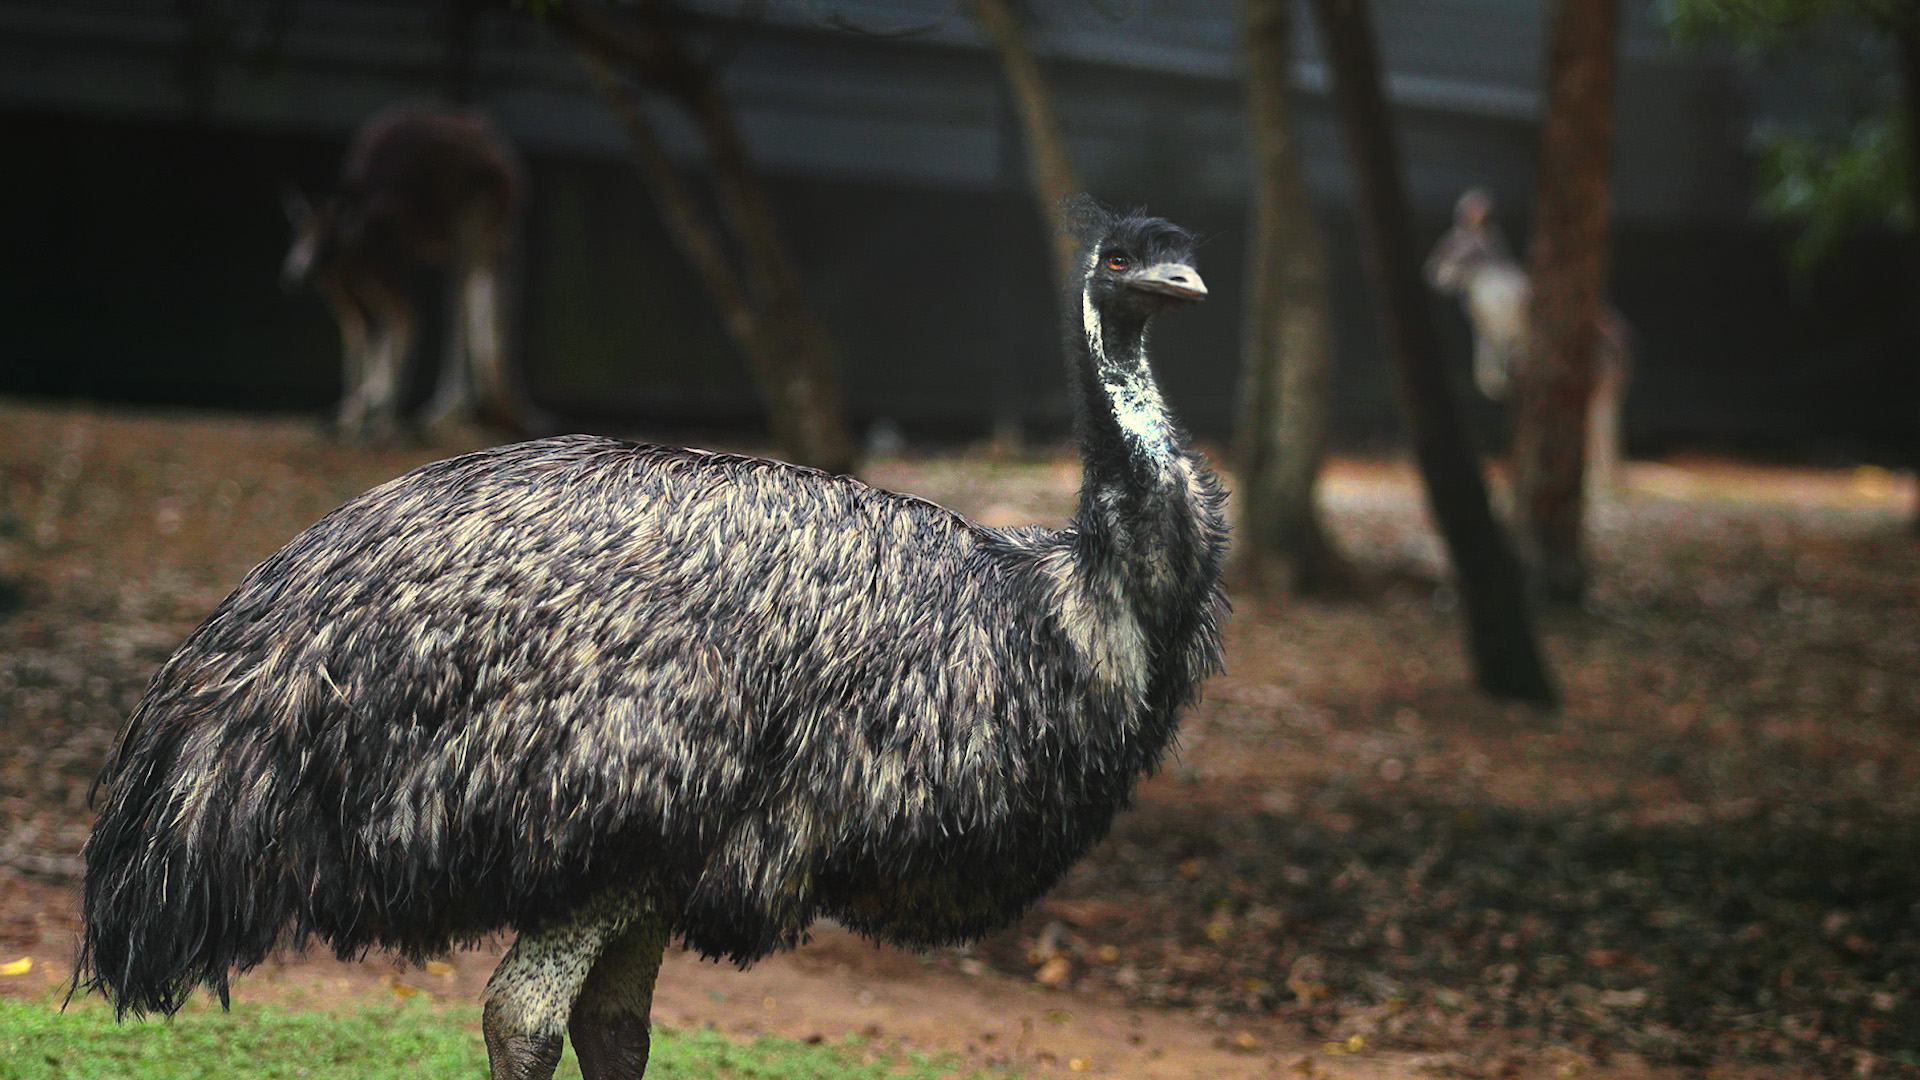 Hemu the emu